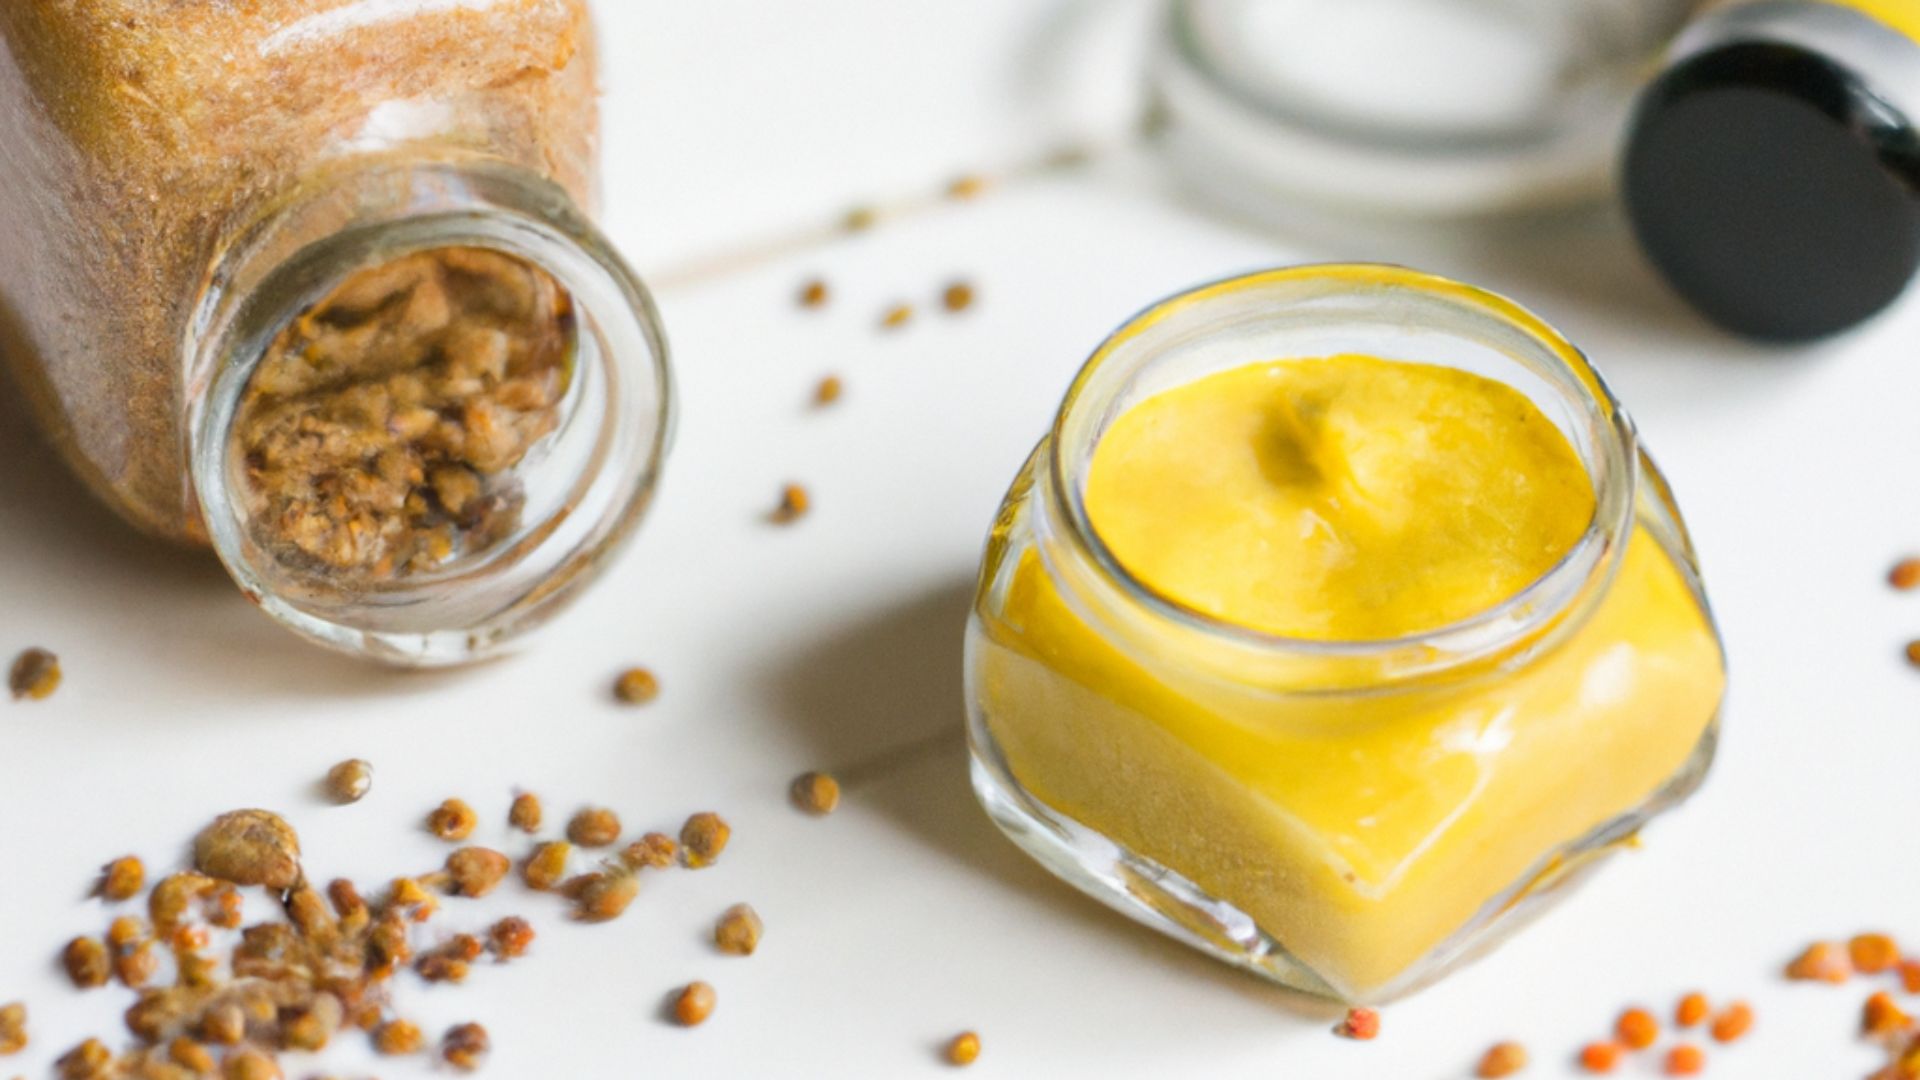  Μάθετε πώς να προετοιμάζετε σάλτσα μουστάρδας με μέλι και να προσθέσετε μια ξεχωριστή πινελιά στις συνταγές σας.